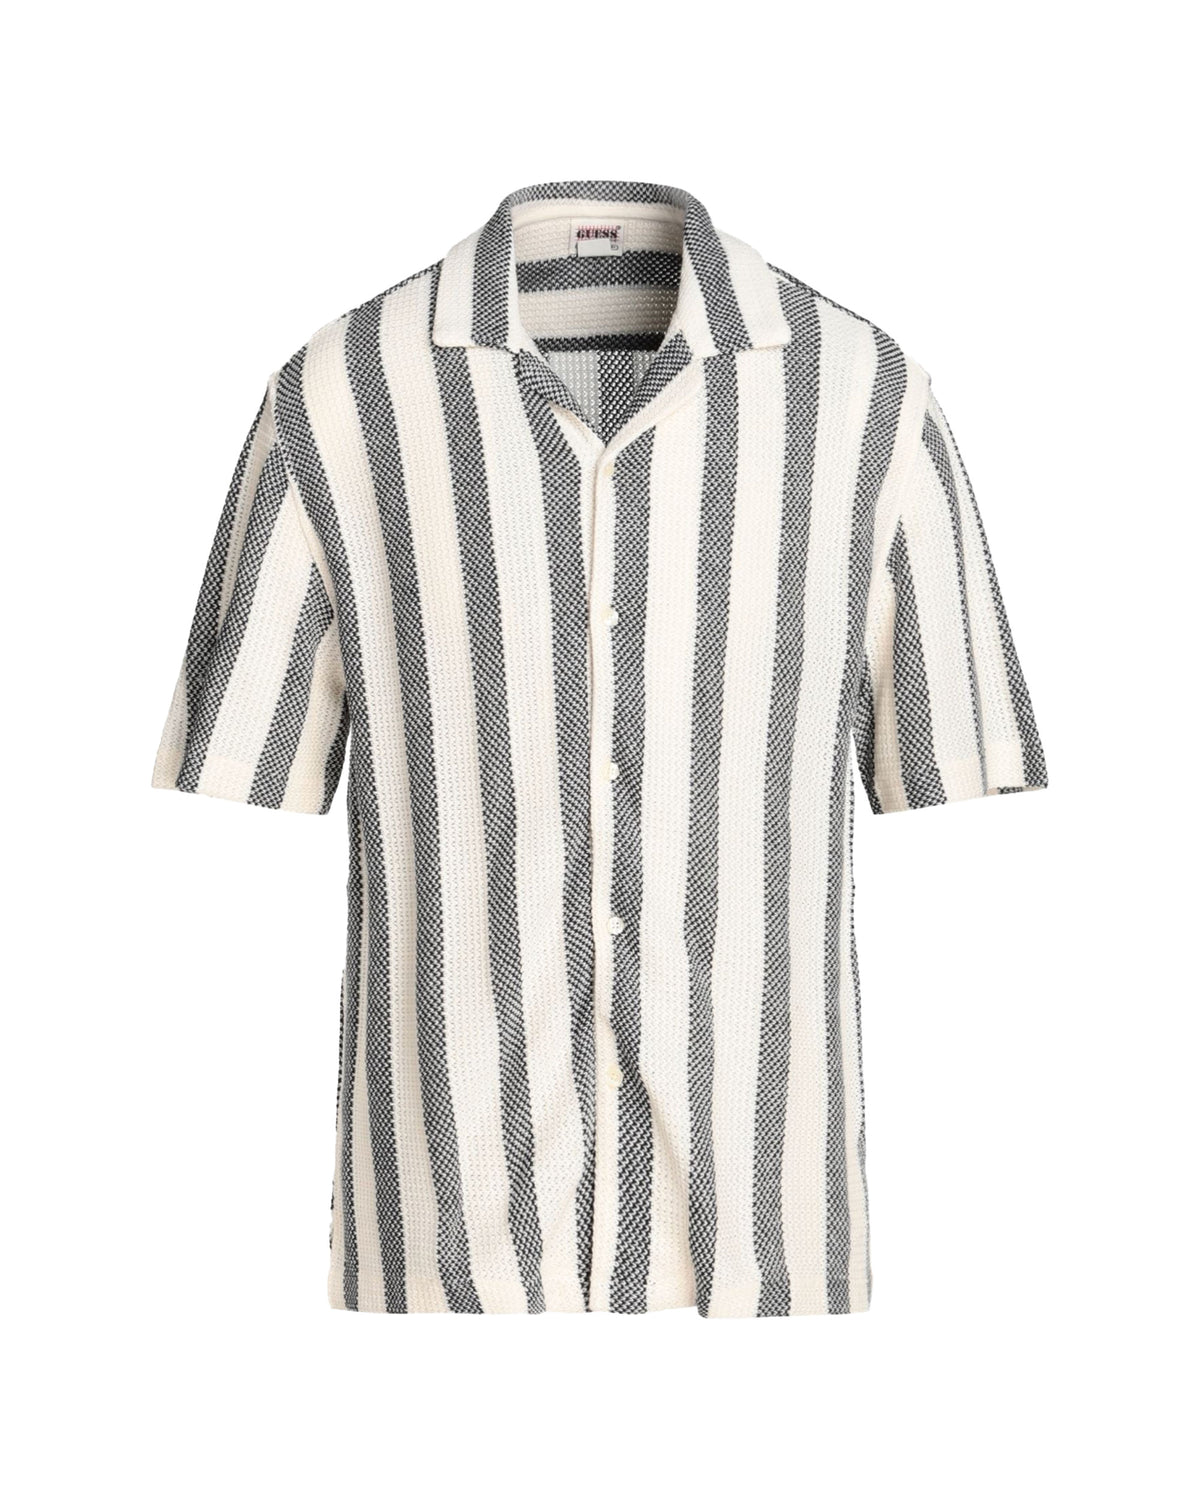 Camicia Uomo Guess Originals Open Knit Shirt Sandy Shore Multi